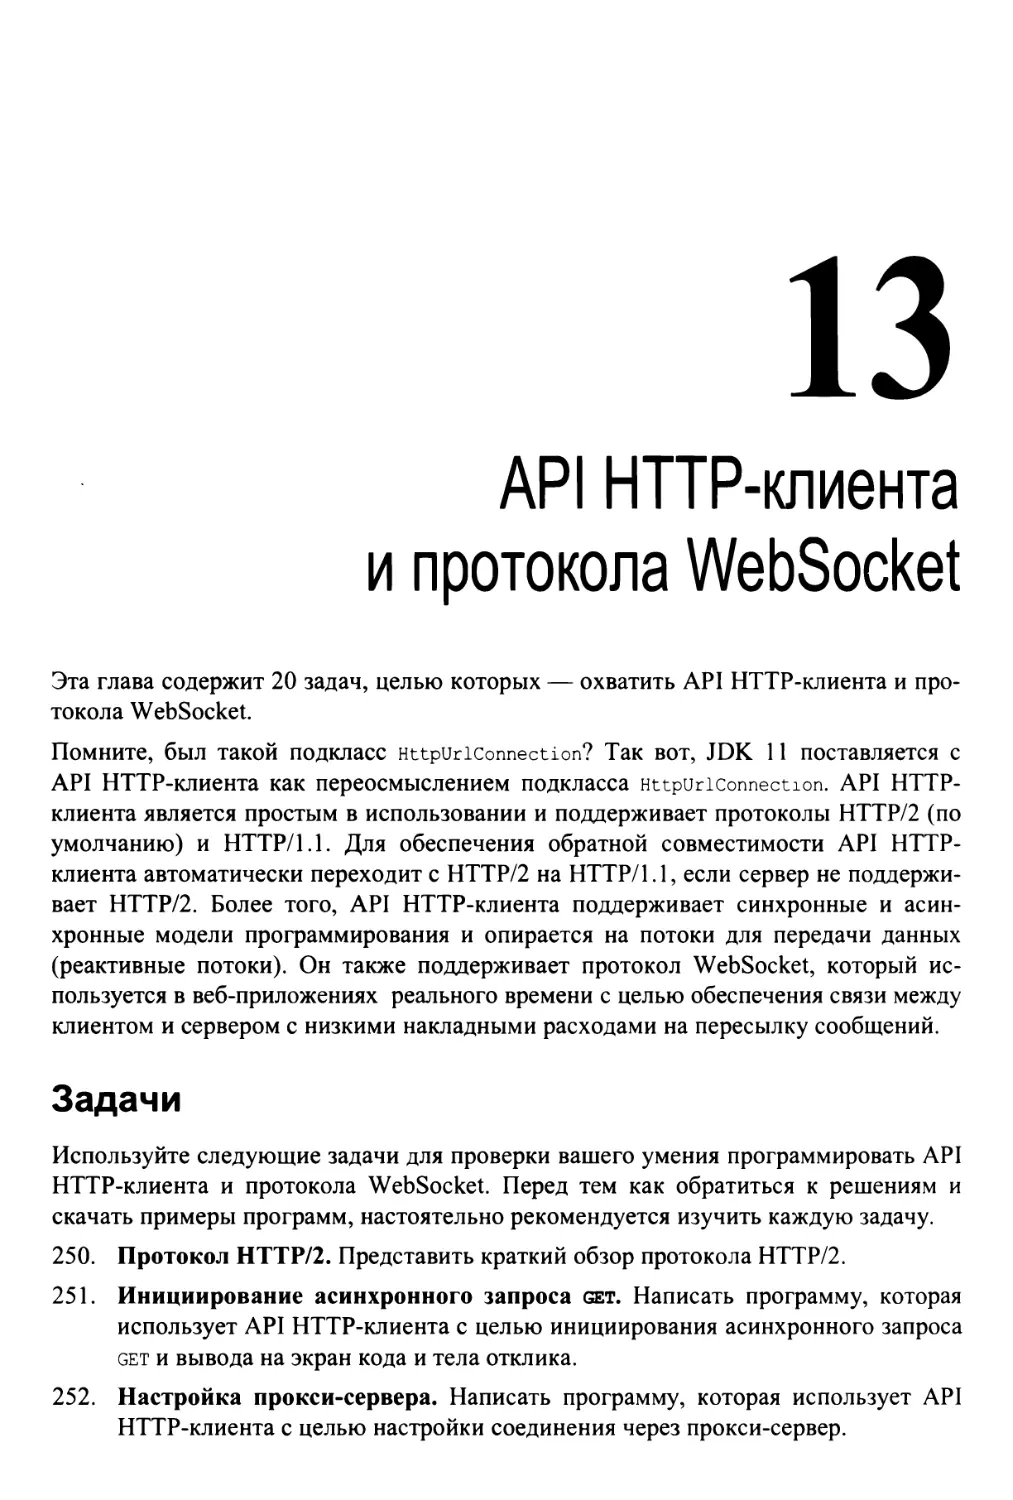 Глава 13. API HTTP-клиента и протокола WebSocket